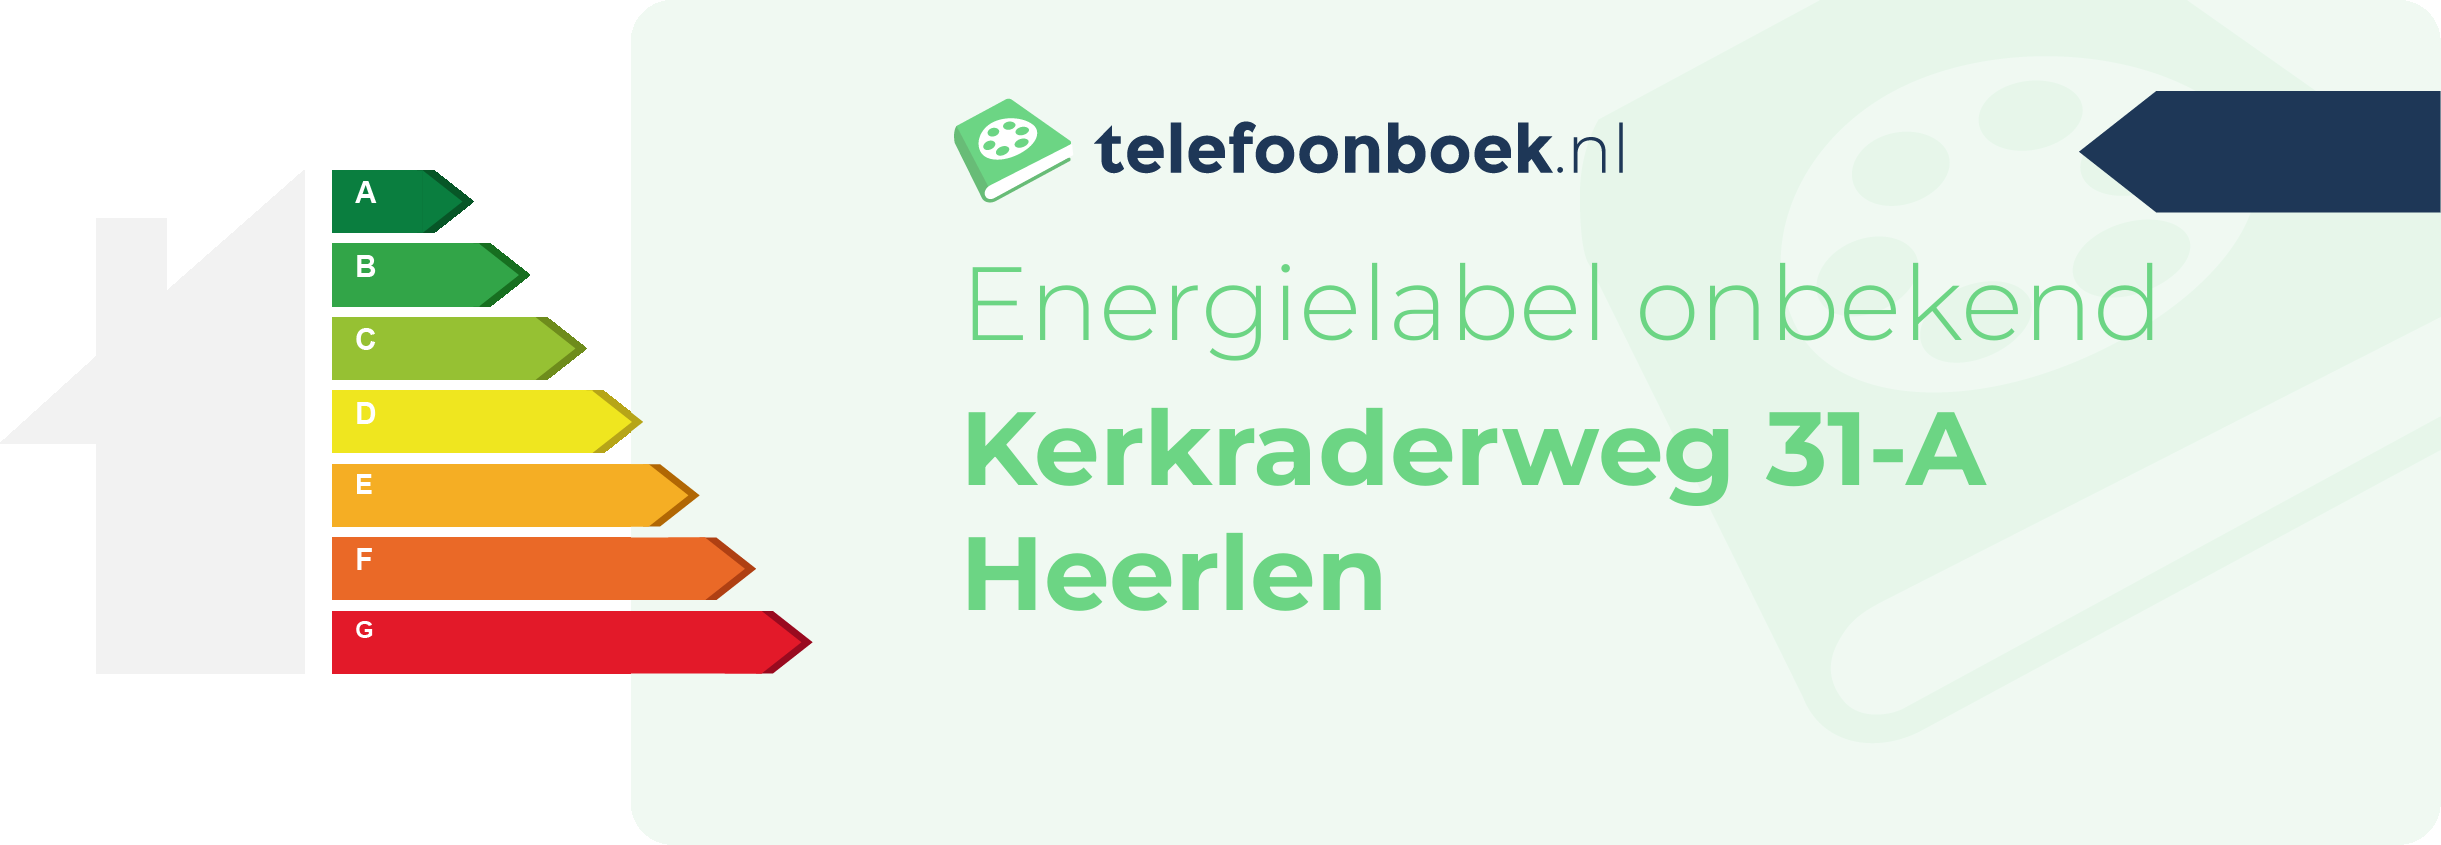 Energielabel Kerkraderweg 31-A Heerlen